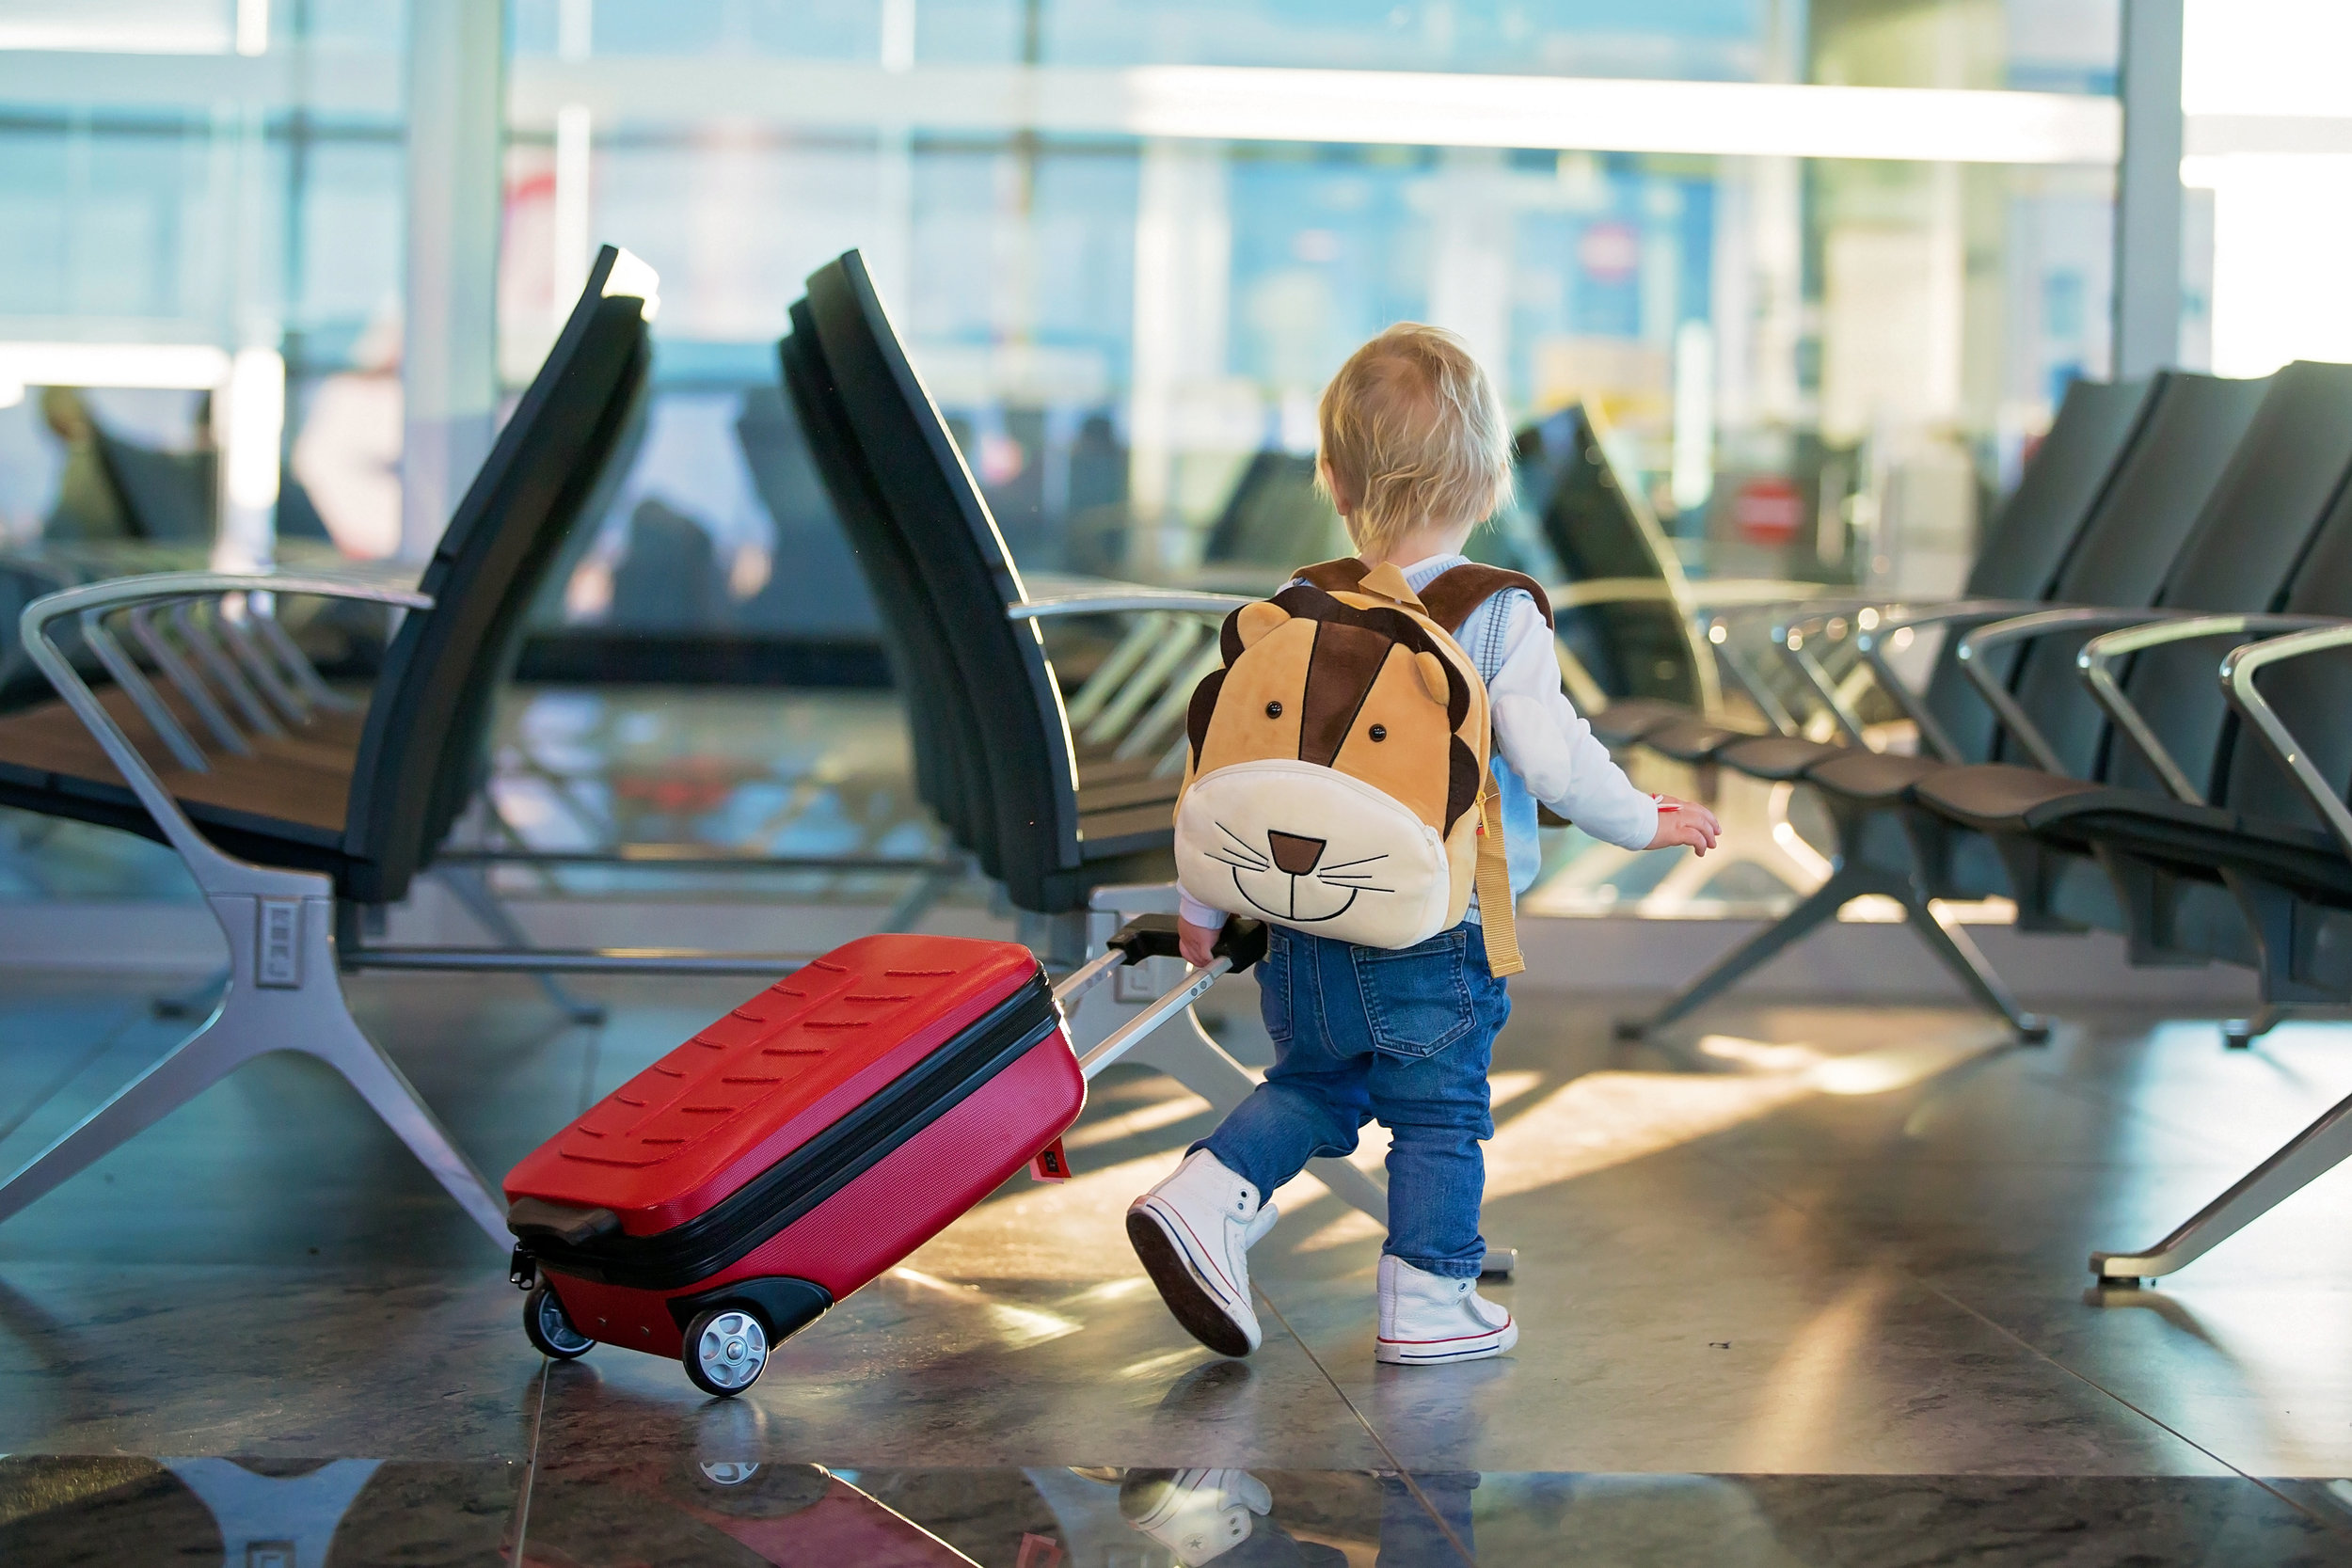 Liste d'items pour un voyage en avion avec un enfant en bas âge — Je suis  une maman